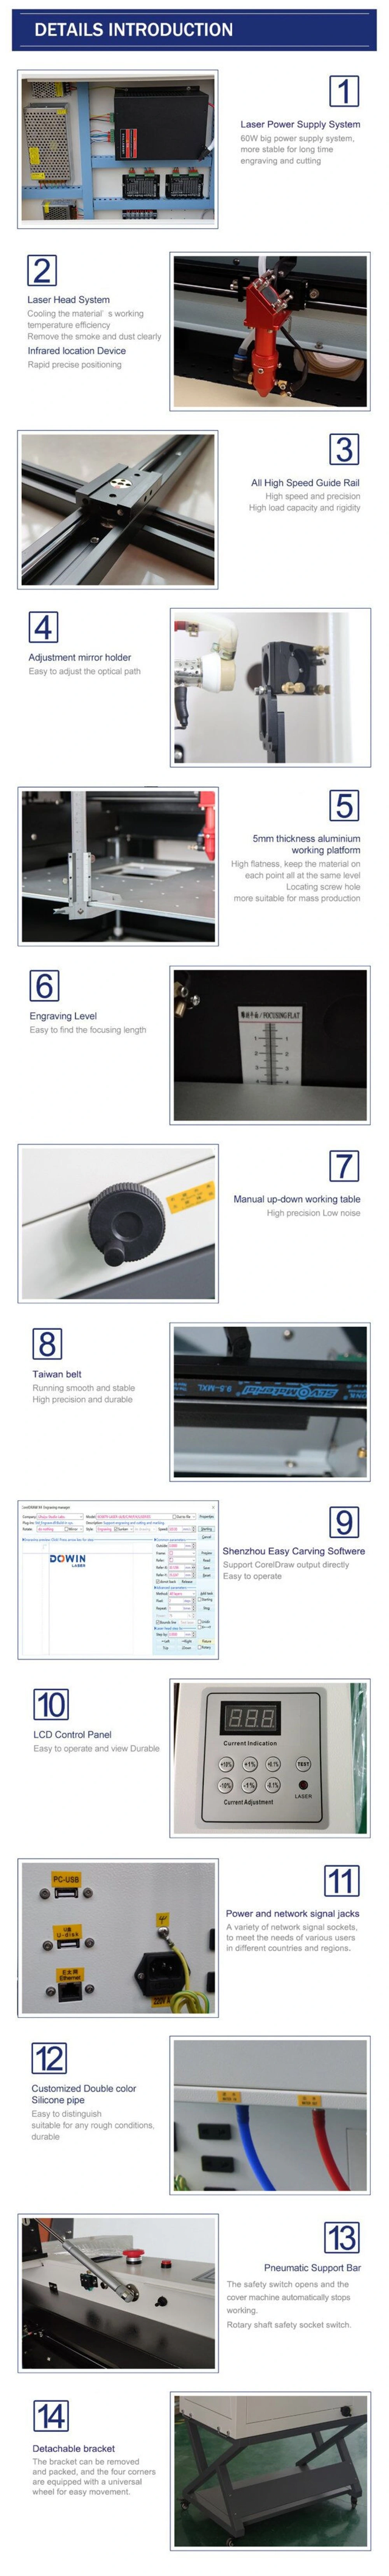 Dual Laser Heads Honeycomb Working Platform CO2 Laser Cutting Engraving Machine